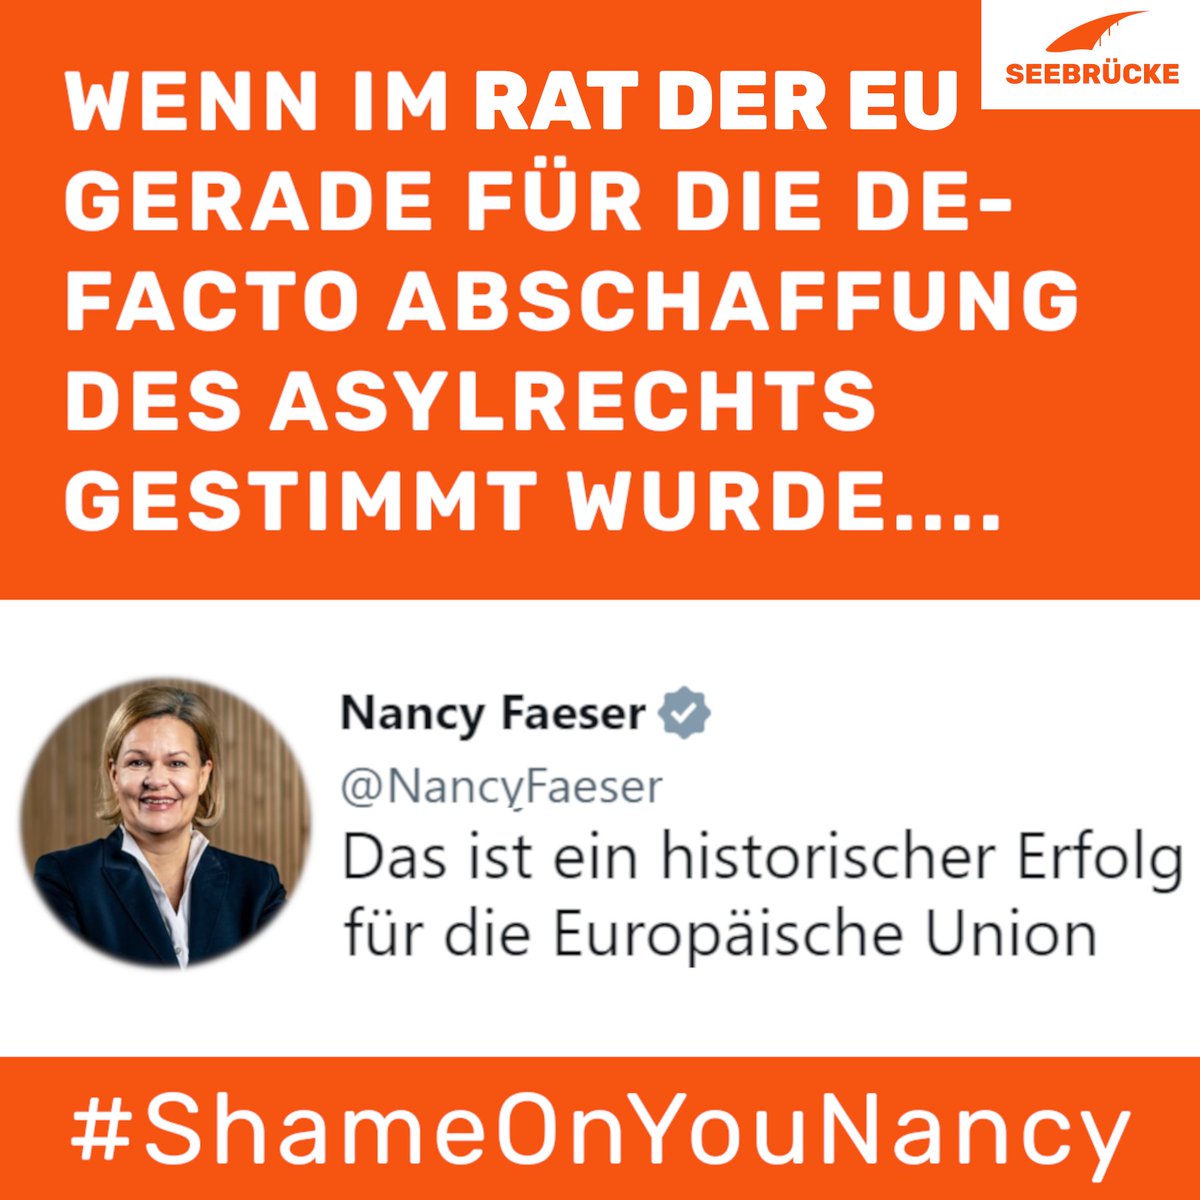 Gestern haben die Innenminister*innen der EU die schärfsten Asylreformen seit Jahrzehnten beschlossen und damit für die de facto Abschaffung des Asylrechts gestimmt.
#ShameOnYouNancy #GEAS